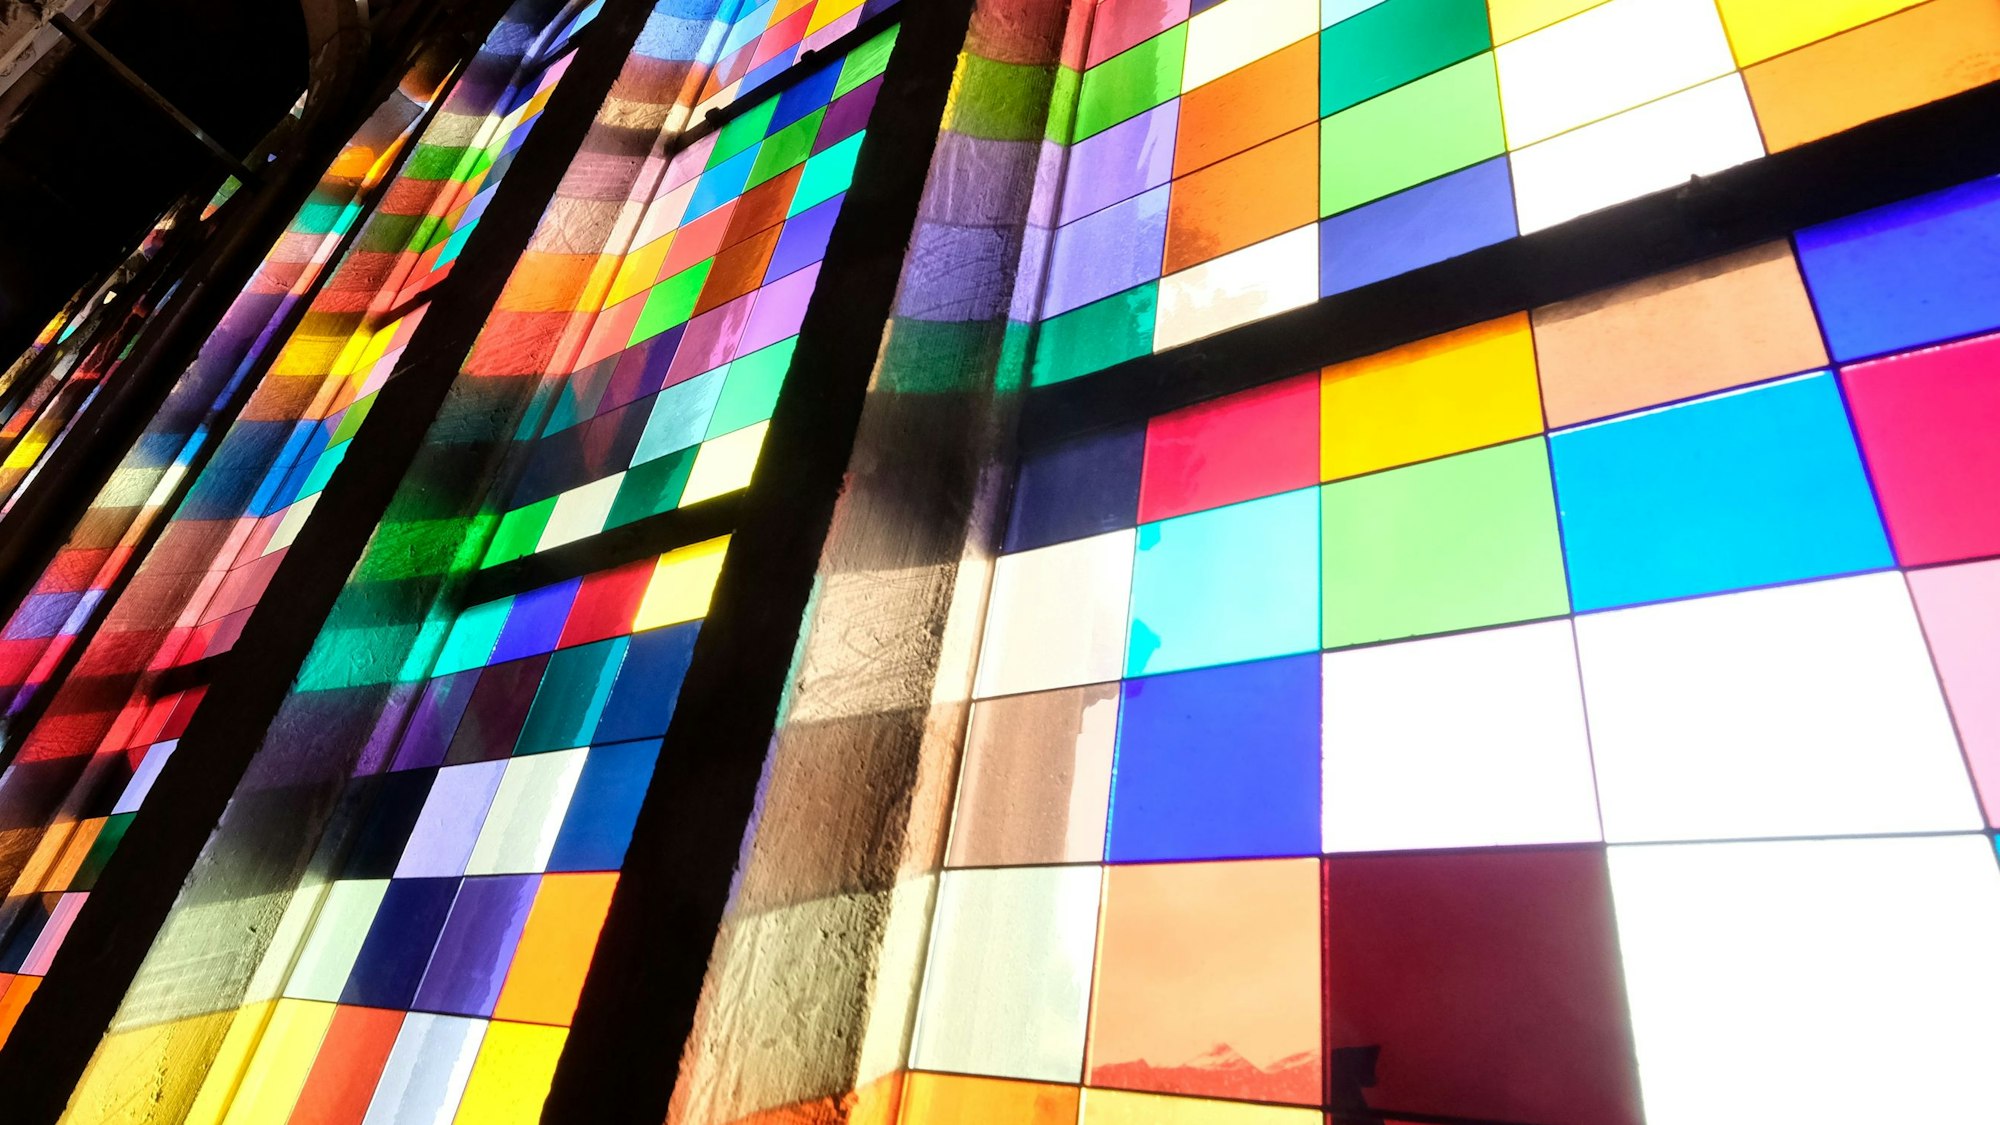 Das Gerhard-Richter-Fenster im Kölner Dom mit seinen bunten Farbquadraten.